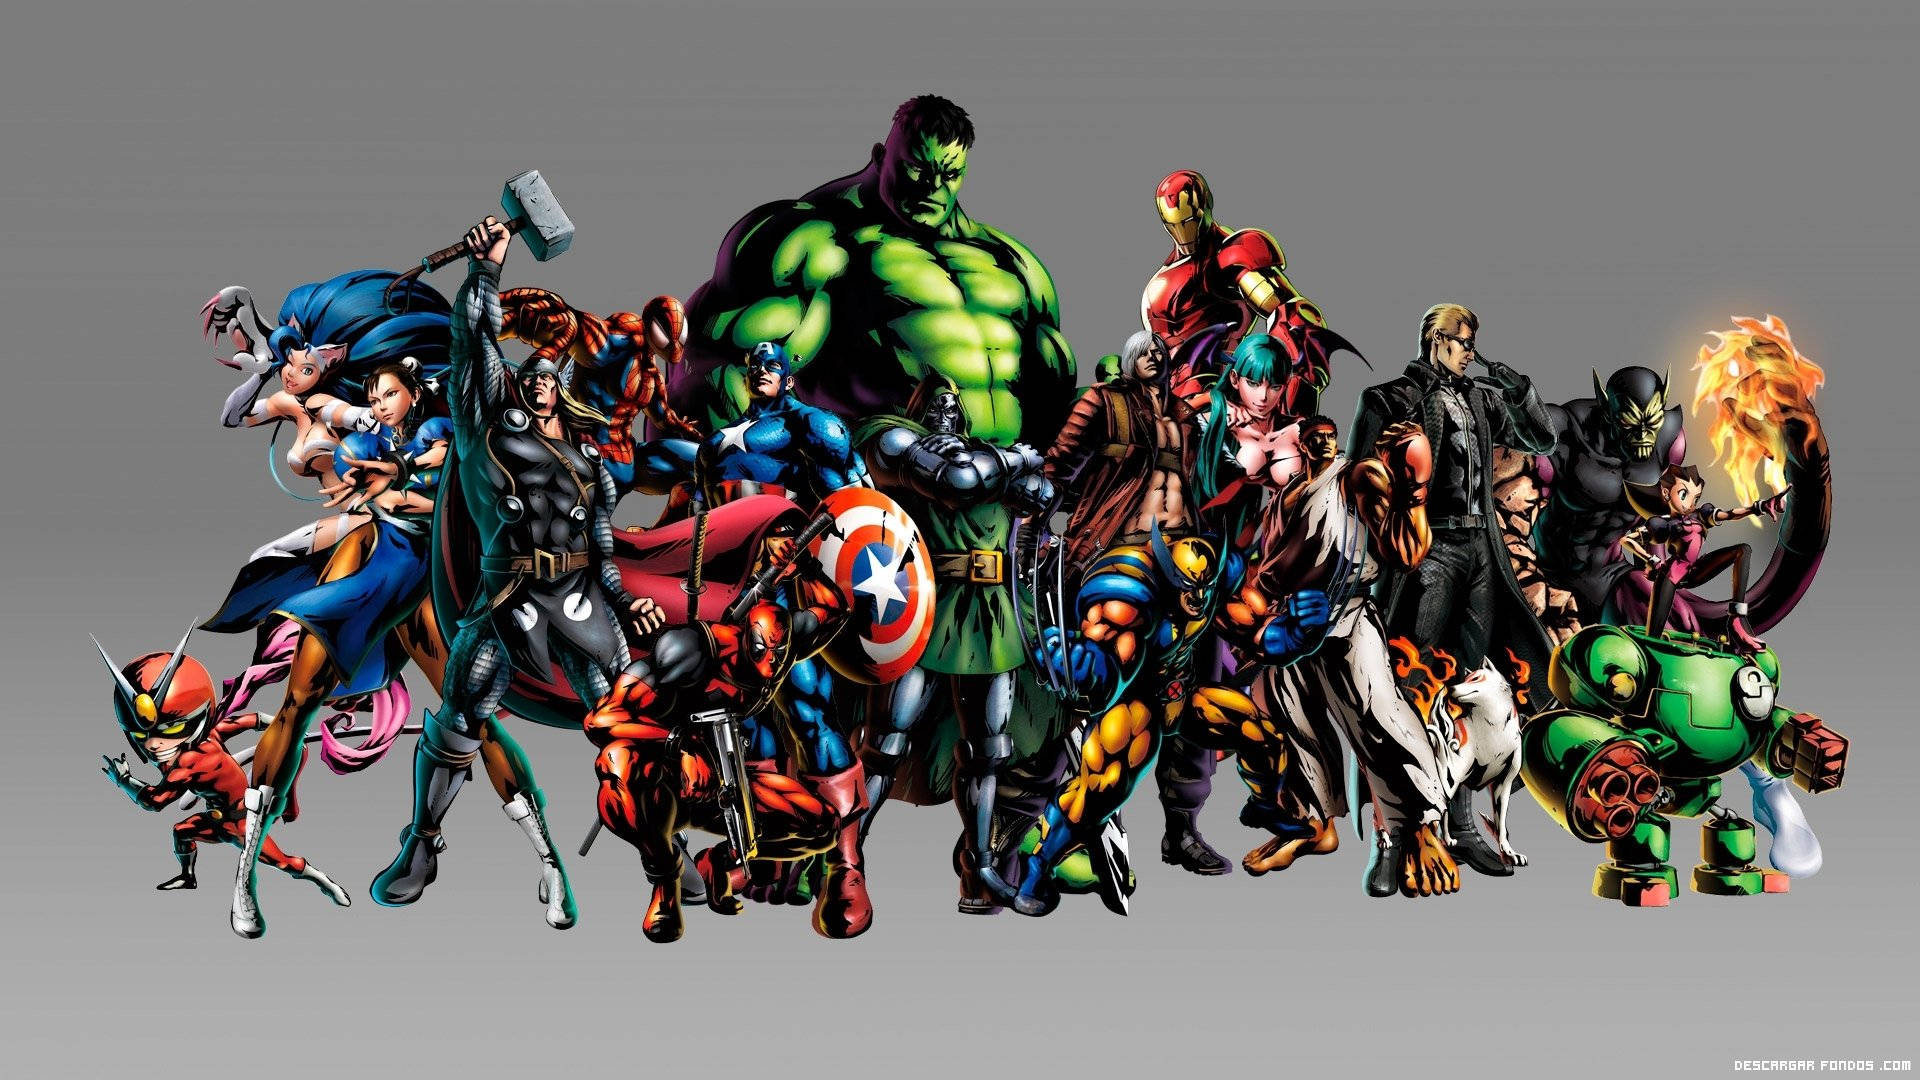 Caption: Asserting Dominance - Marvel's Avengers Assemble Background